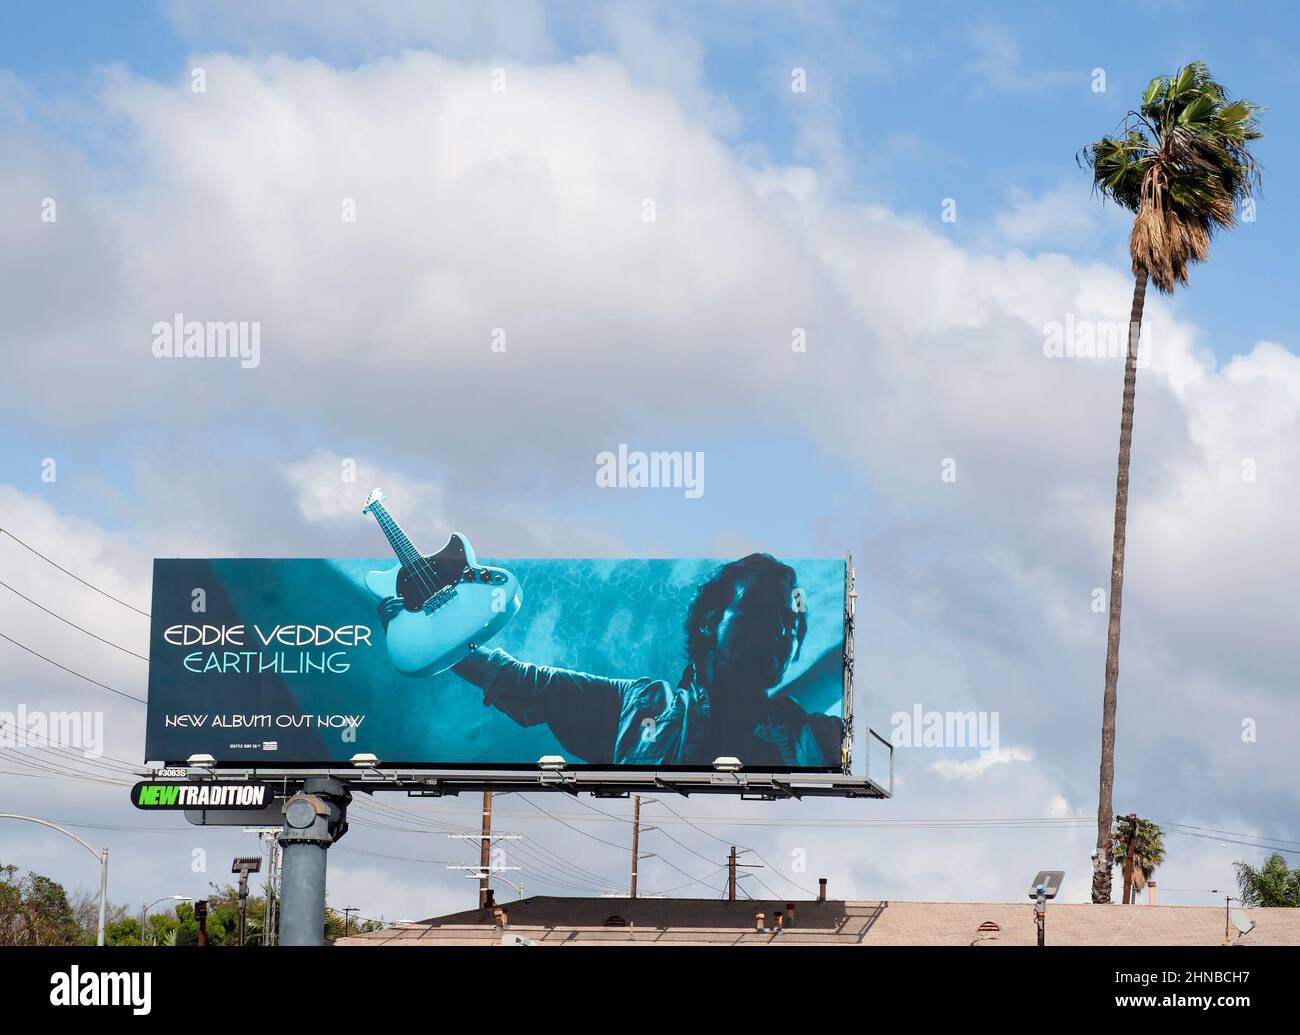 Un cartellone a Los Angeles annuncia l'uscita di un nuovo album di Eddie Vedder intitolato Earthling. Foto Stock